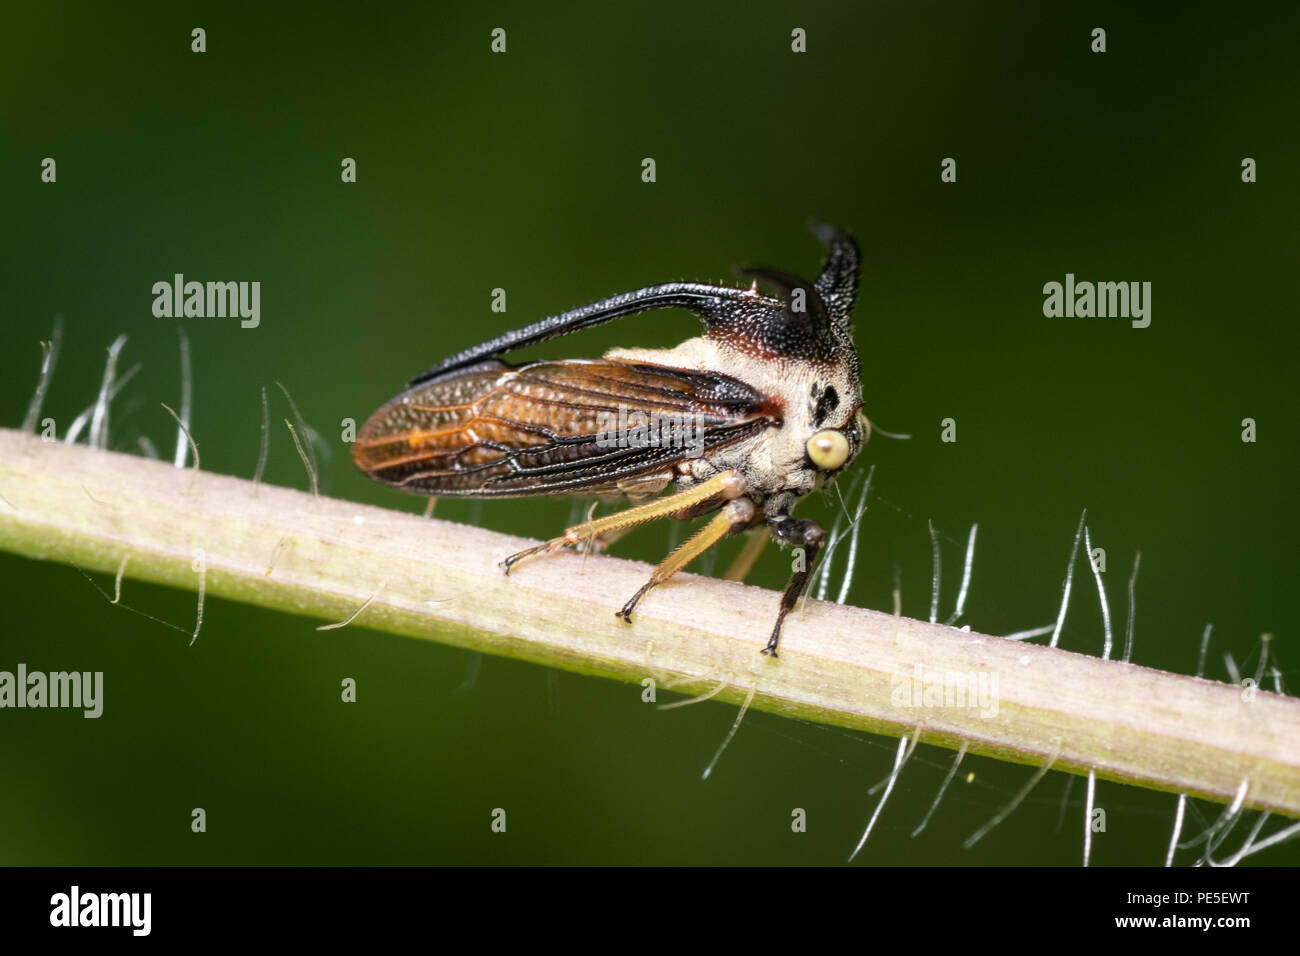 Treehoppers alo conosciuta come Thorn bugs sono membri della famiglia Membracidae, un gruppo di insetti legate a le cicale e il leafhoppers. Foto Stock